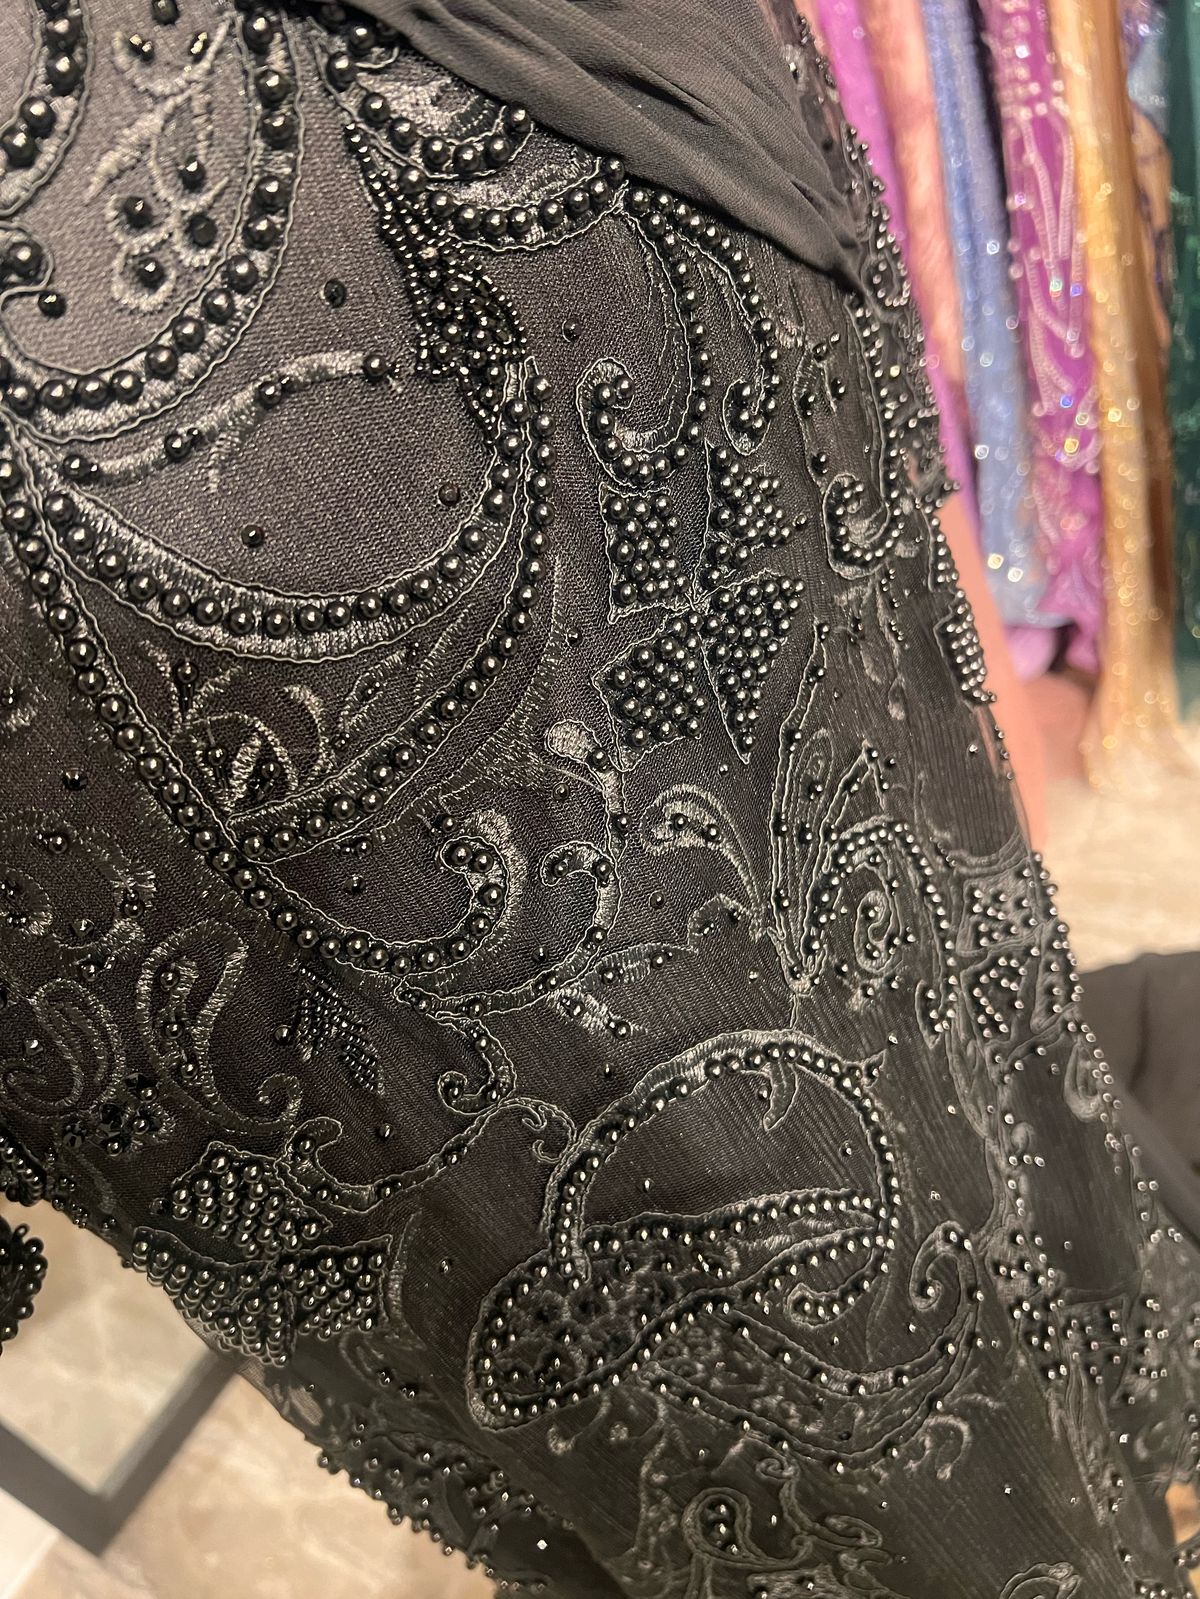 Plus Size 16 Long Sleeve Black Mermaid Dress on Queenly